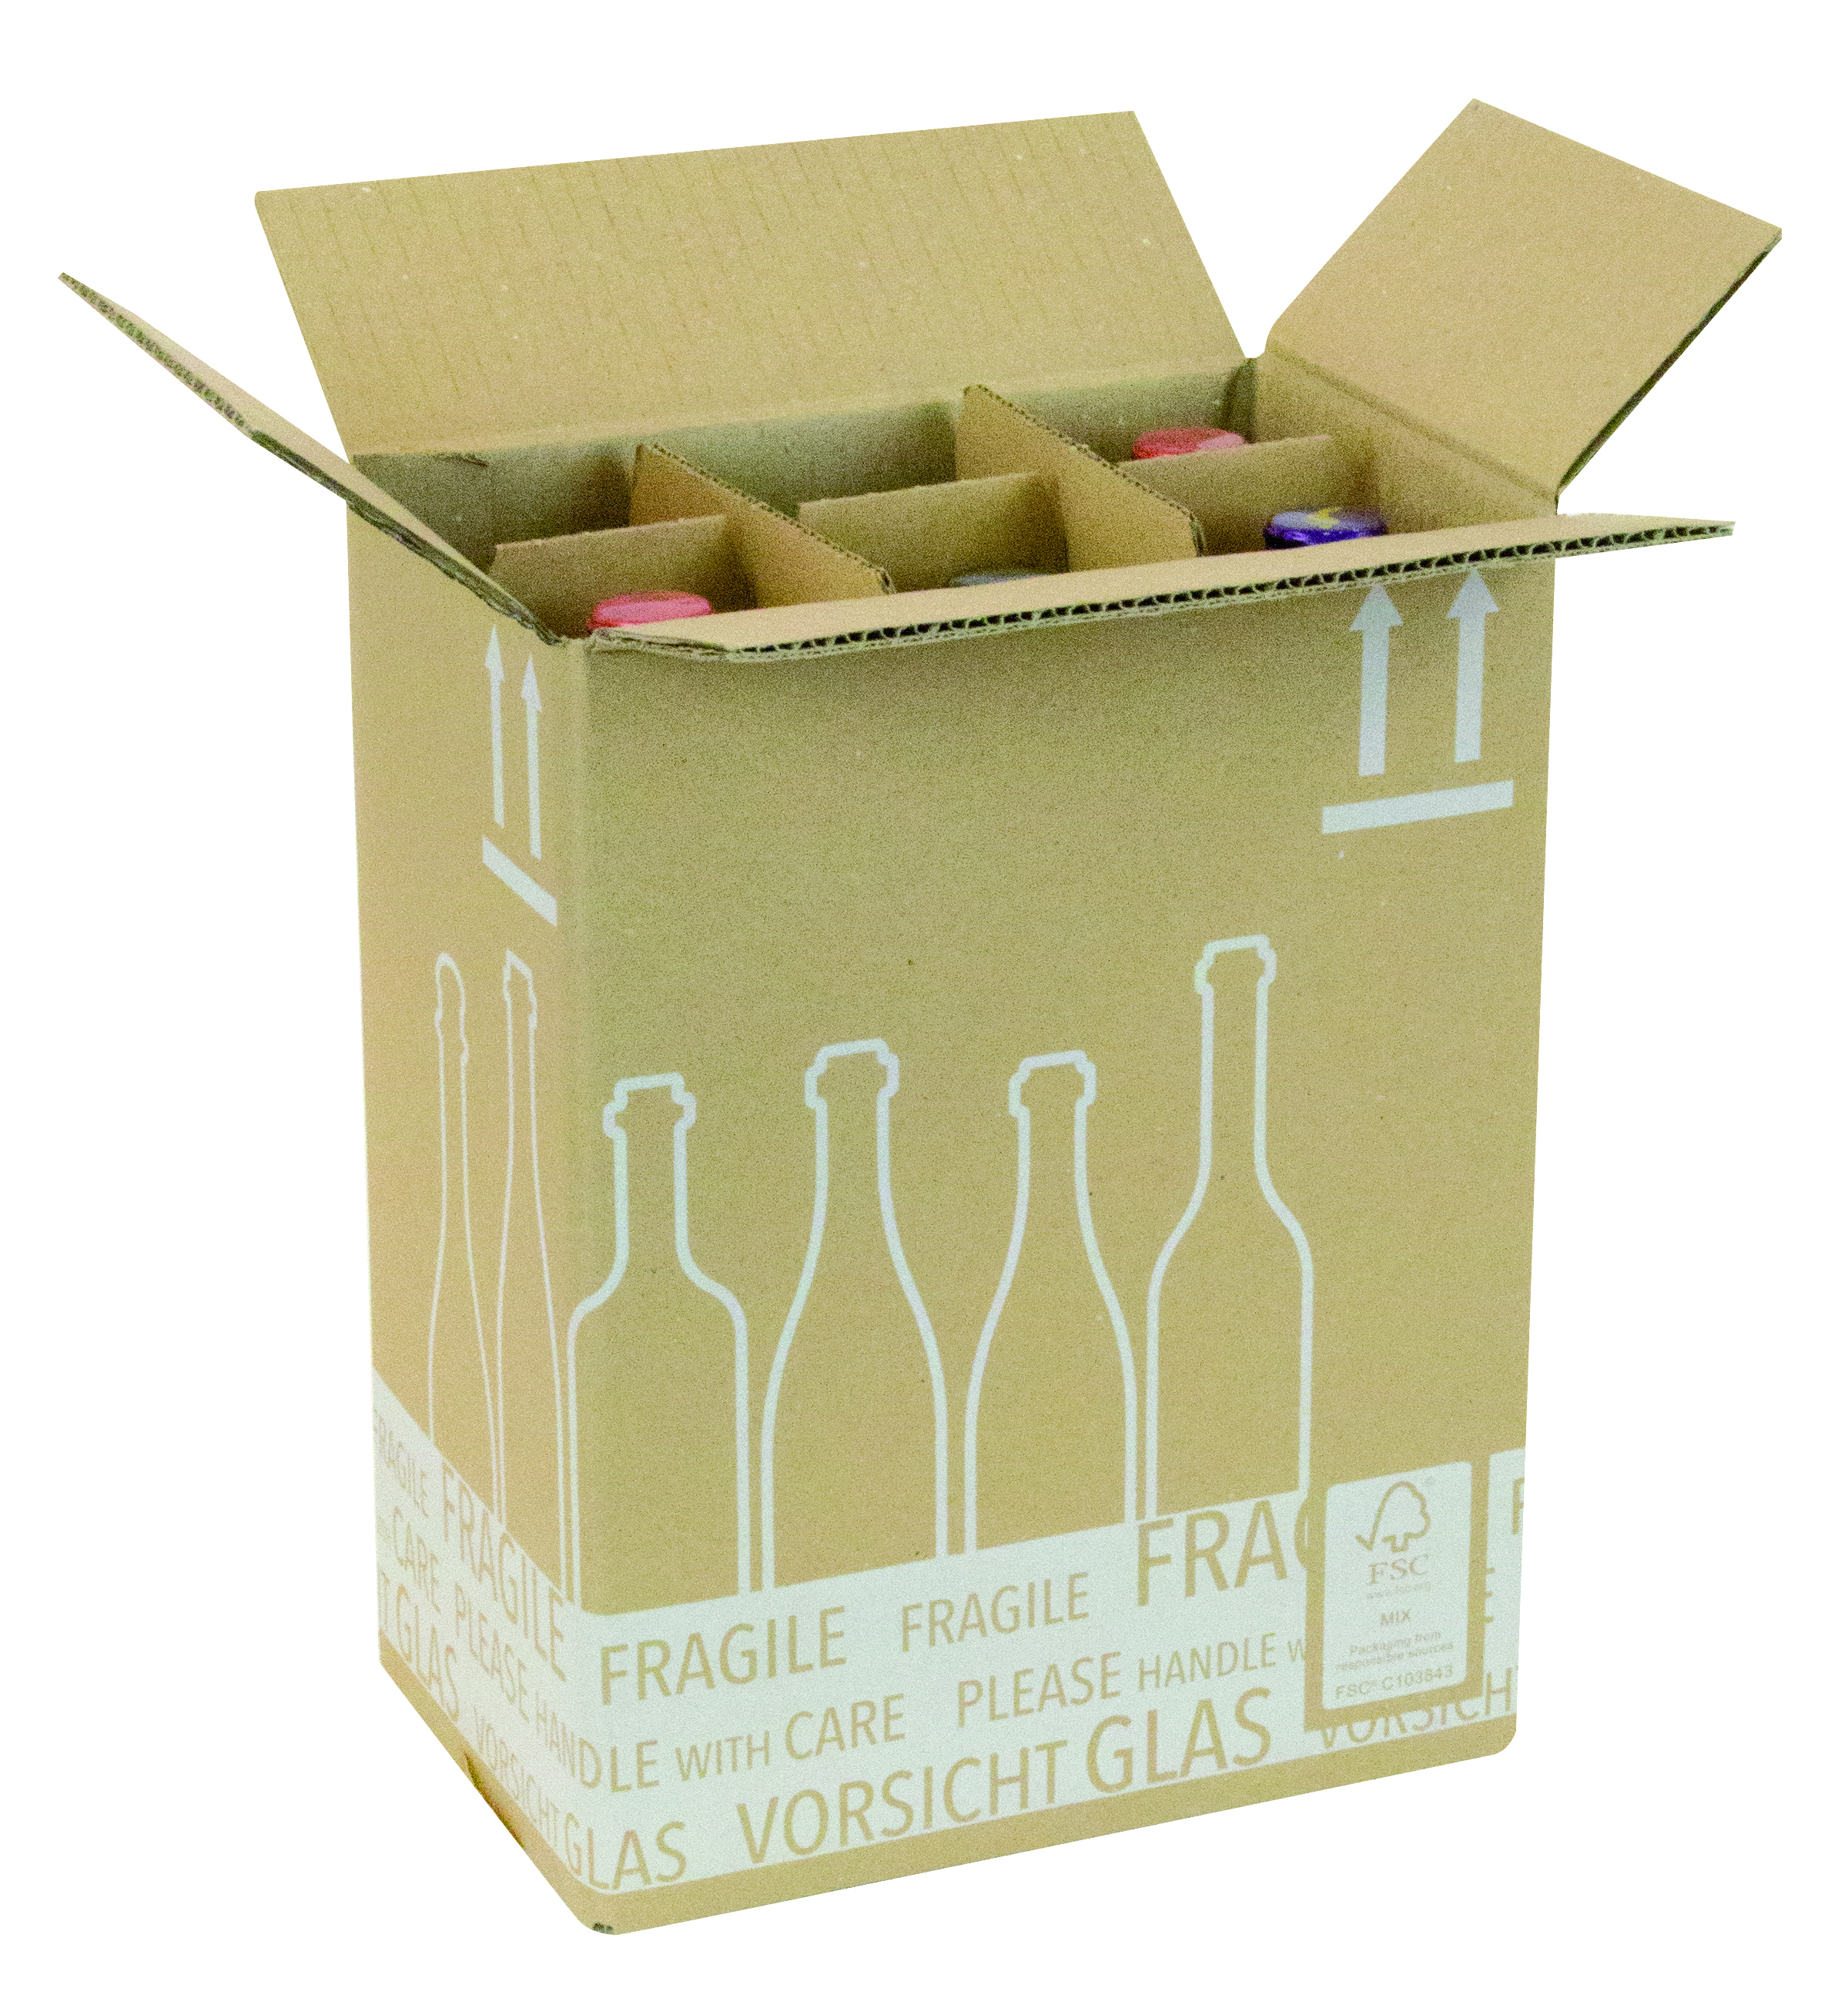 Boîte d'expédition pour 6 bouteilles La caisse carton qui expédie vos bouteilles parfaitement protégées.